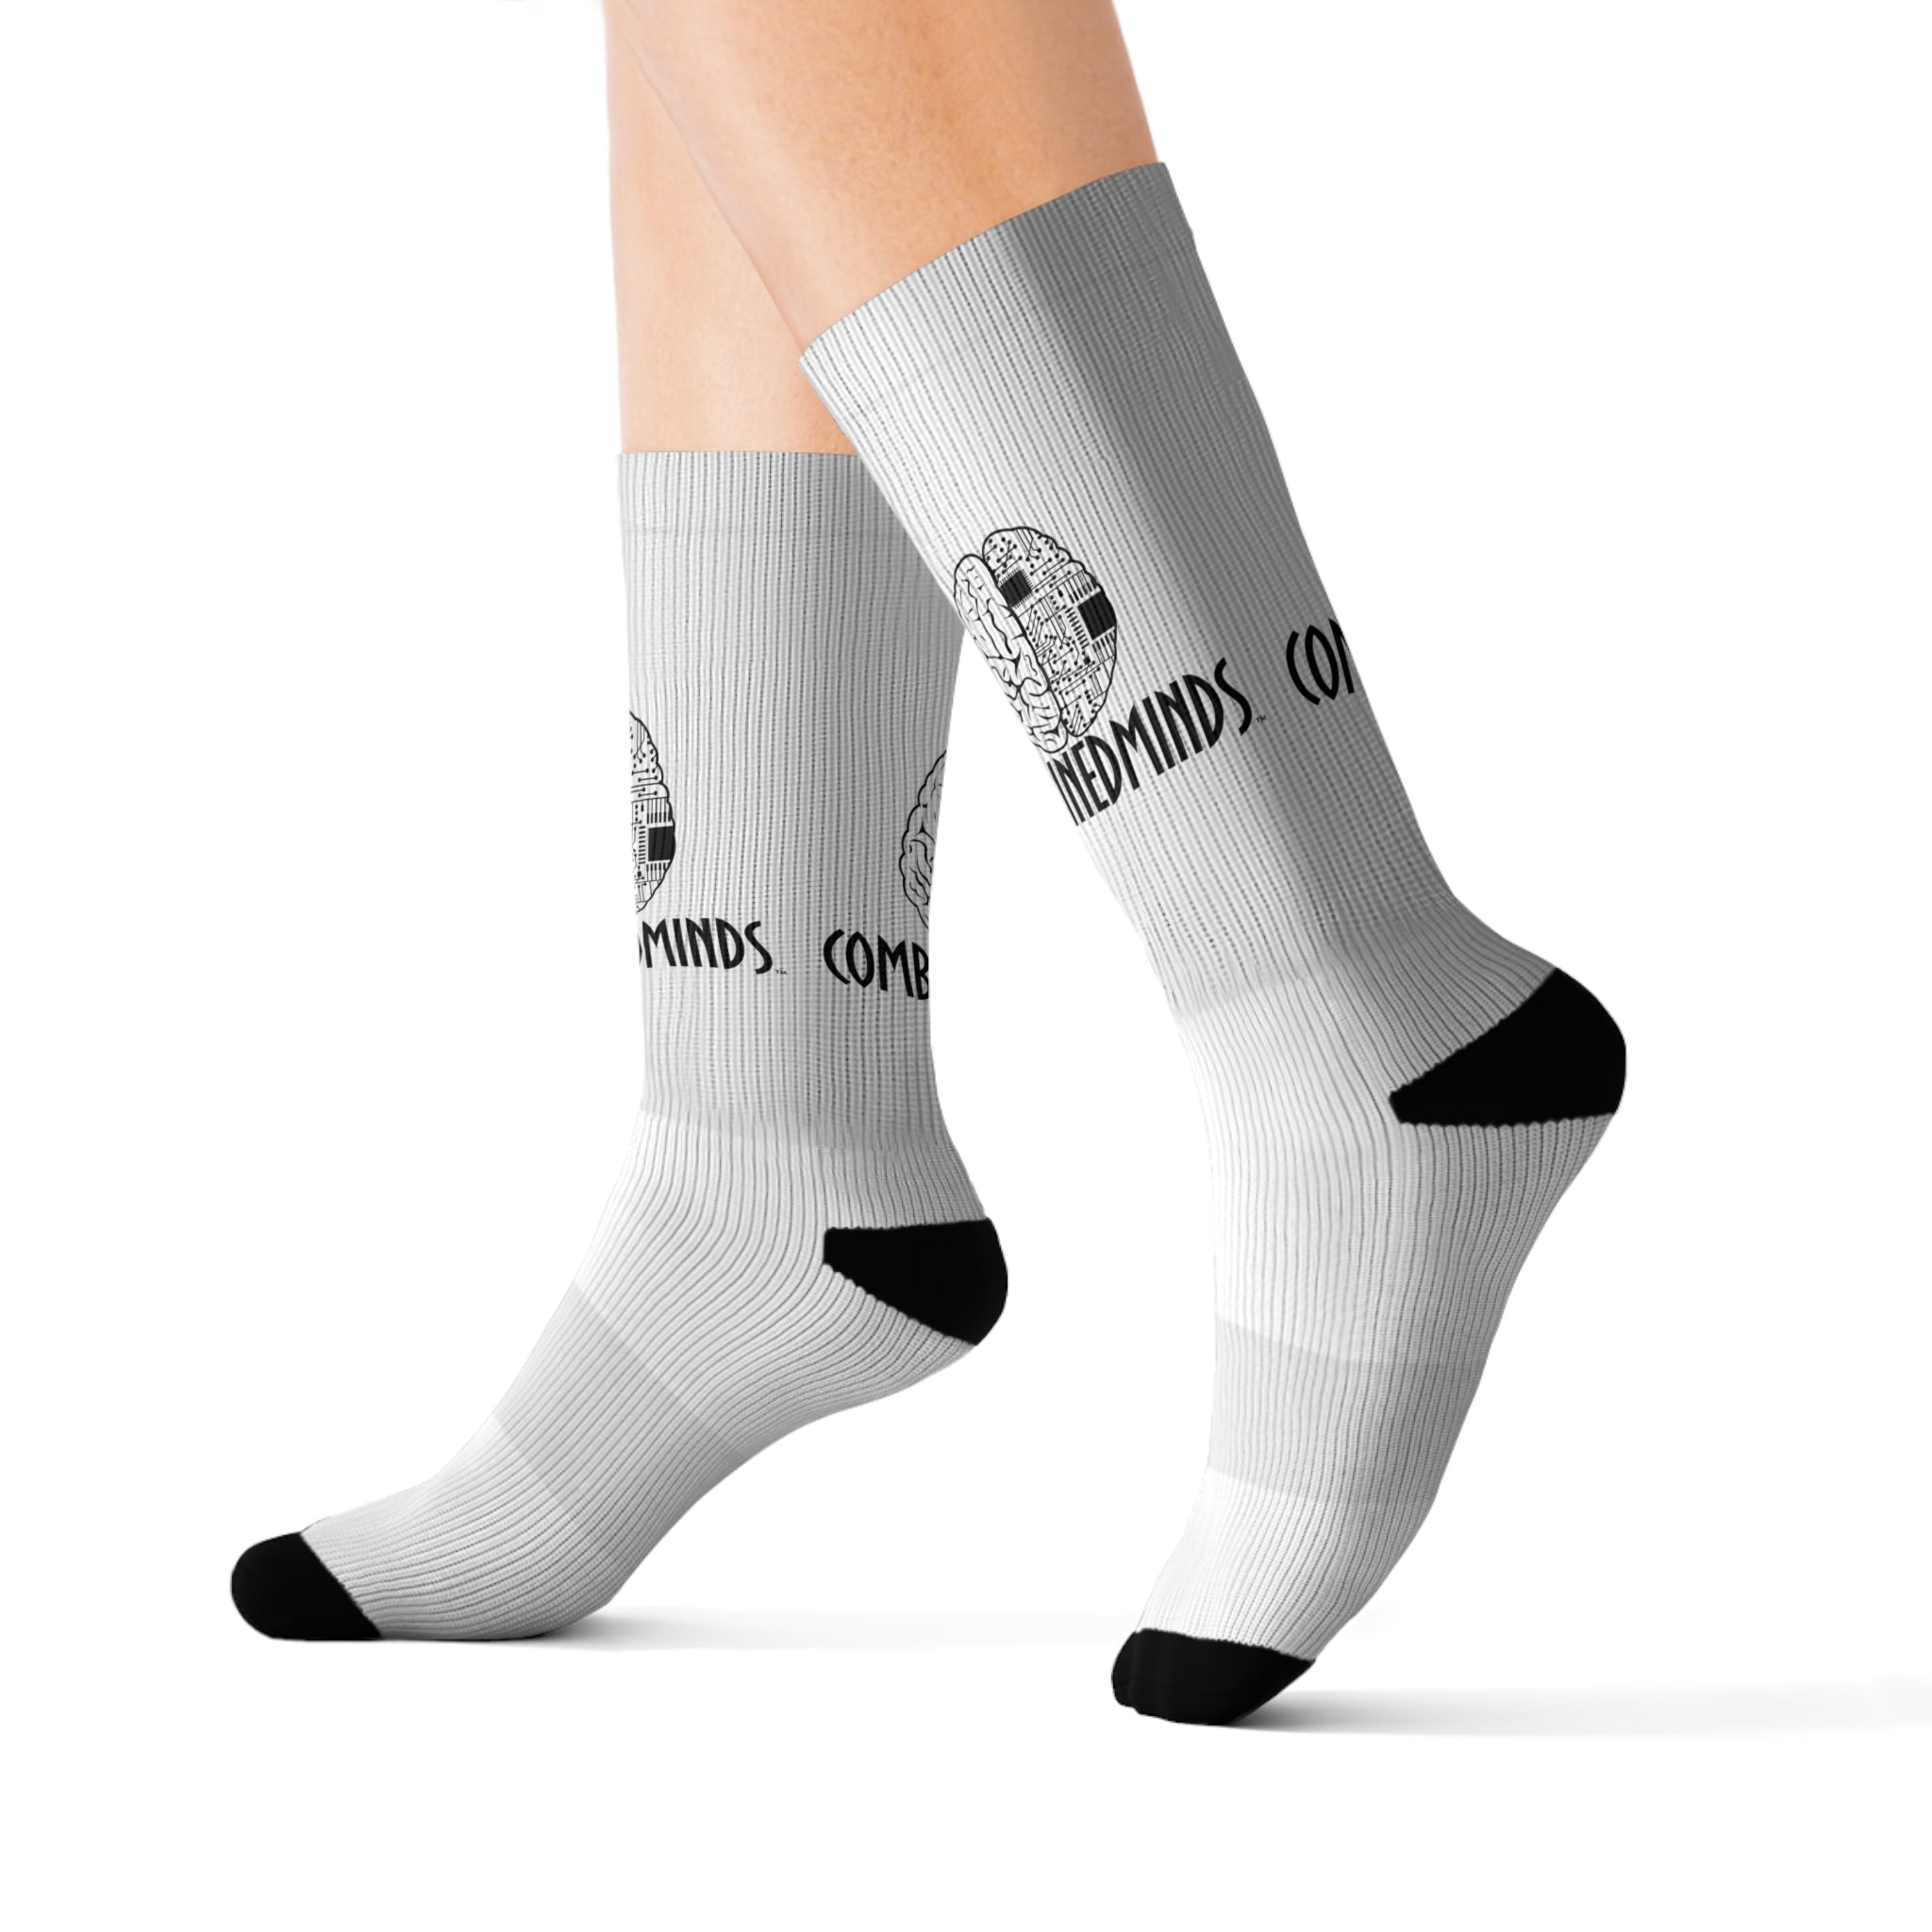 CombinedMinds Sublimation Socks- White Black Logo